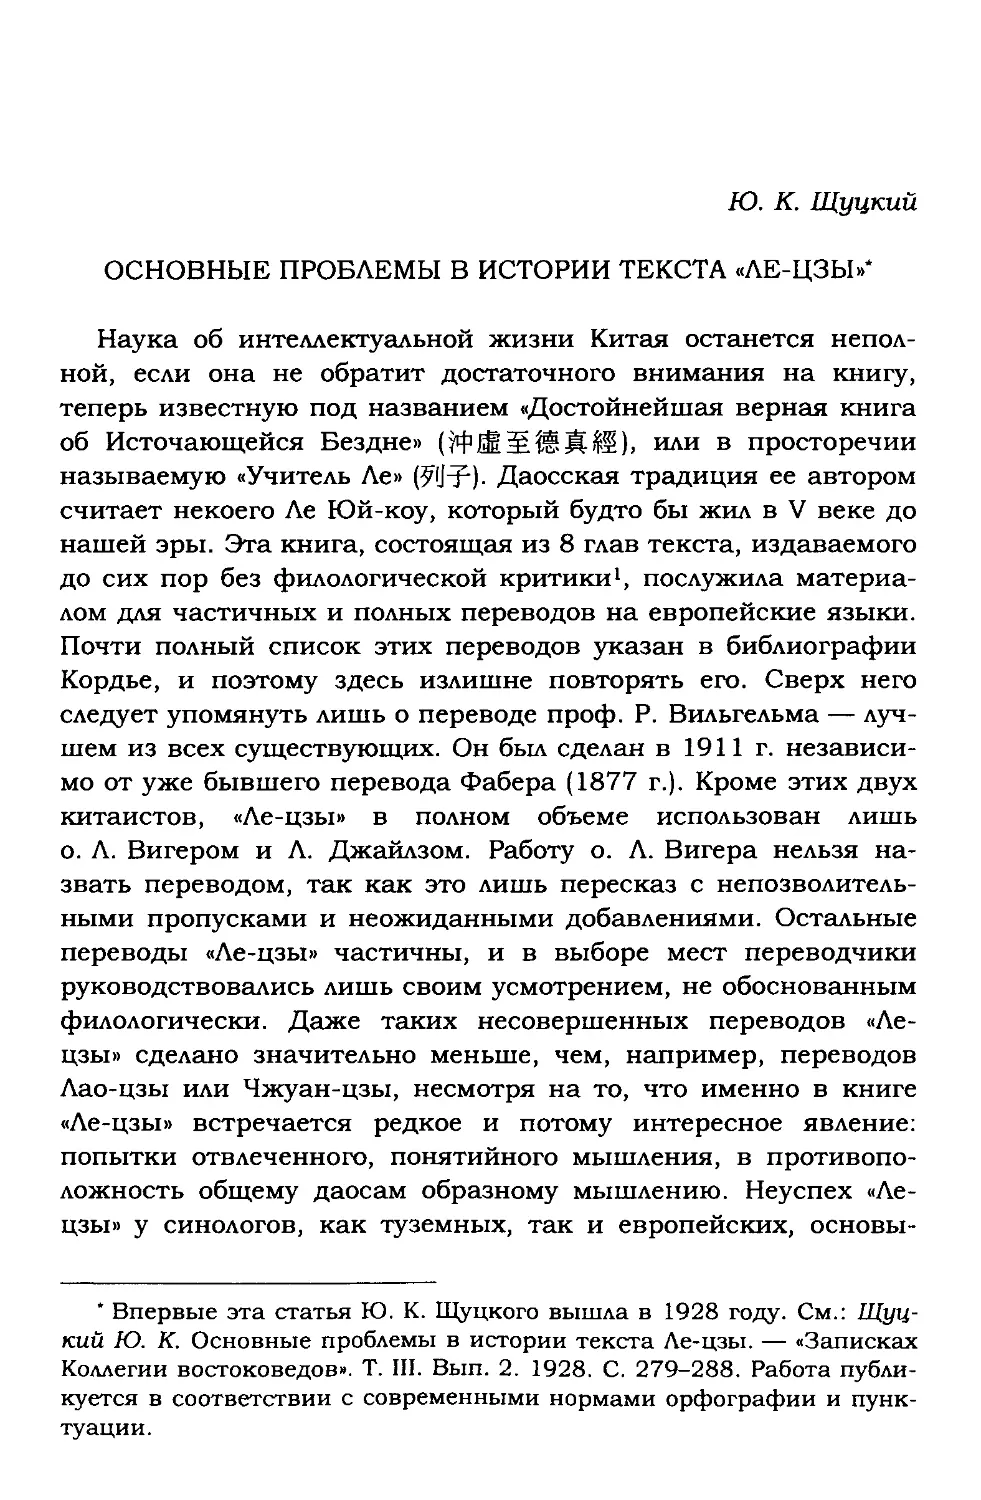 Ю.К. Щуцкий. Основные проблемы в истории текста Ле-цзы (1928)